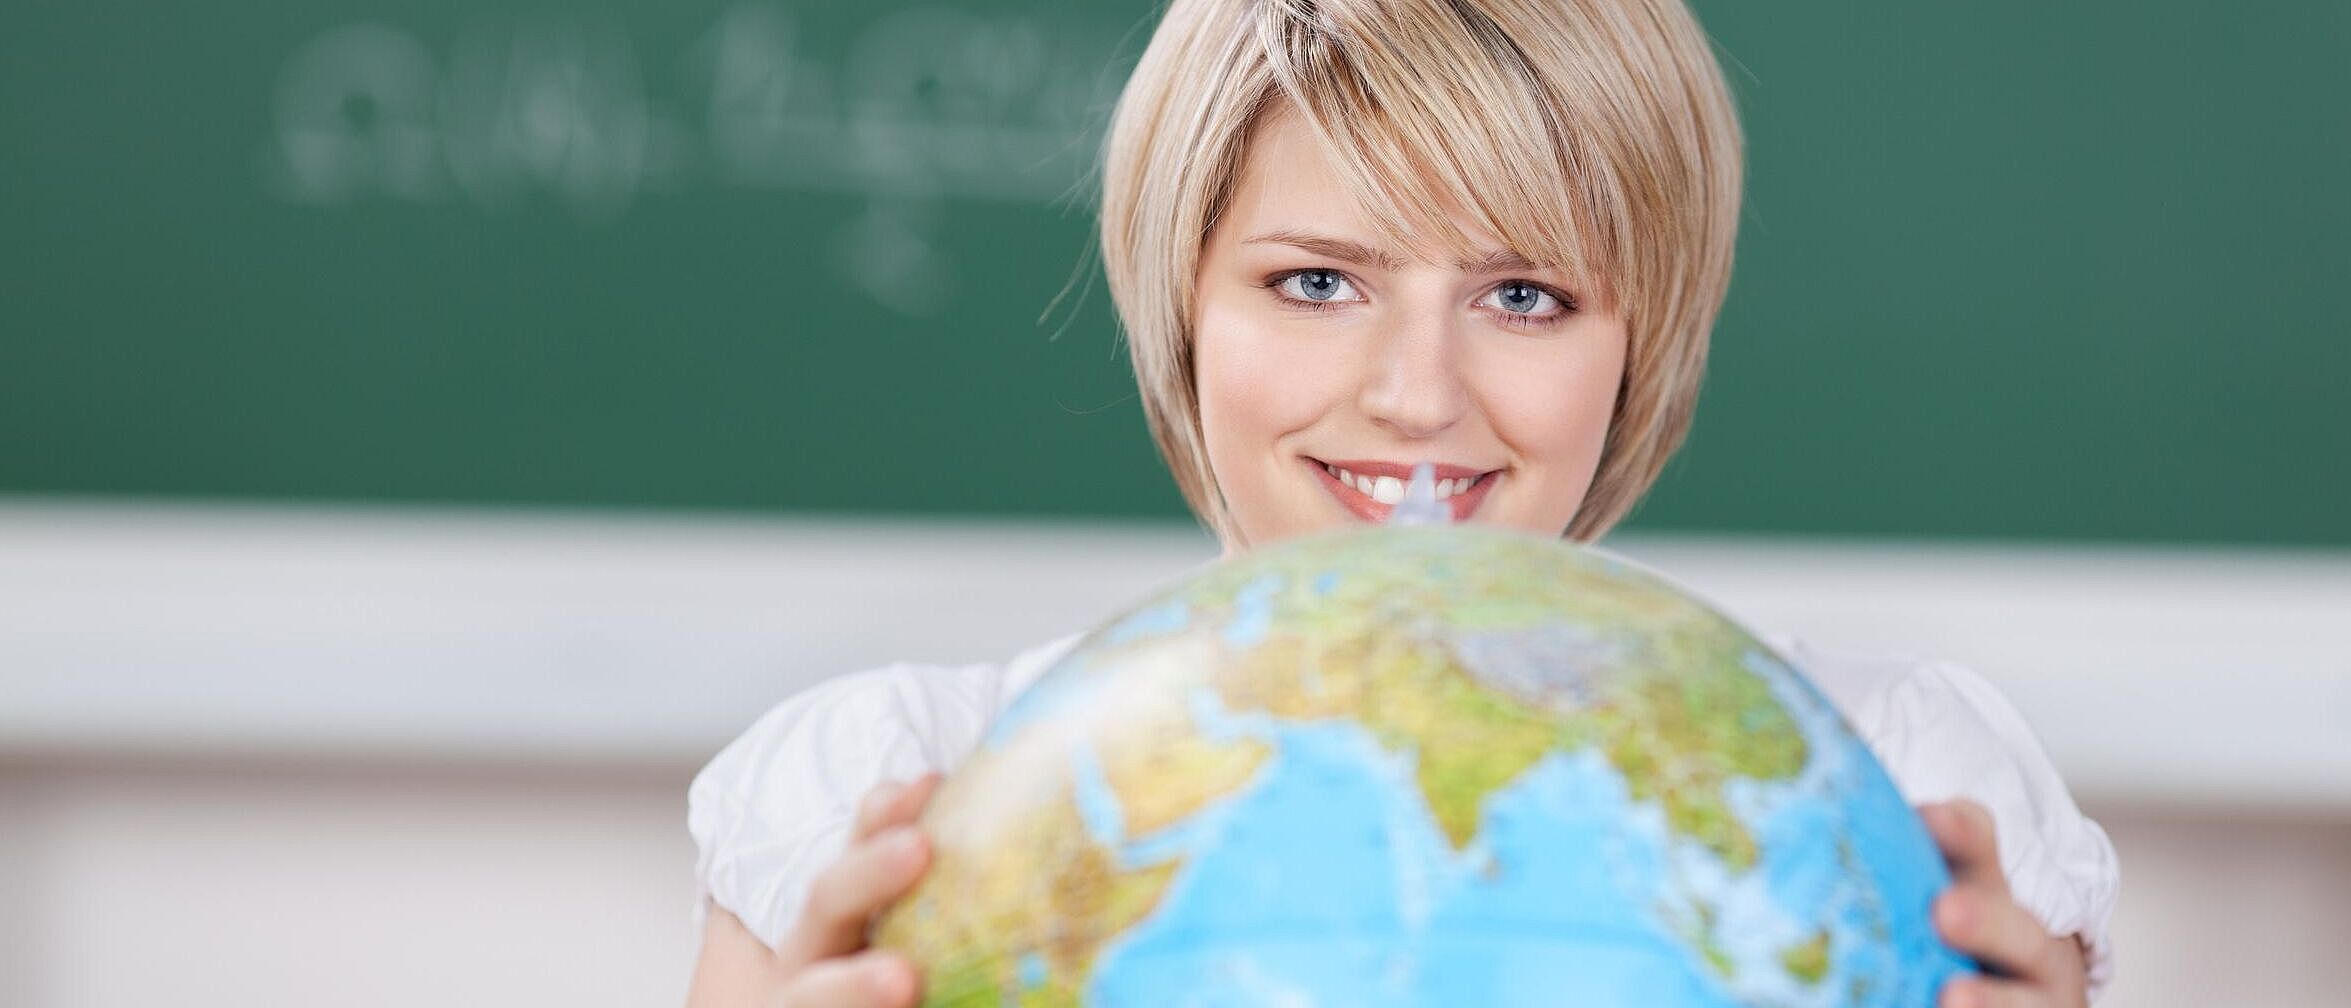 Person befindet sich in einem Klassenzimmer und dreht einen Globus